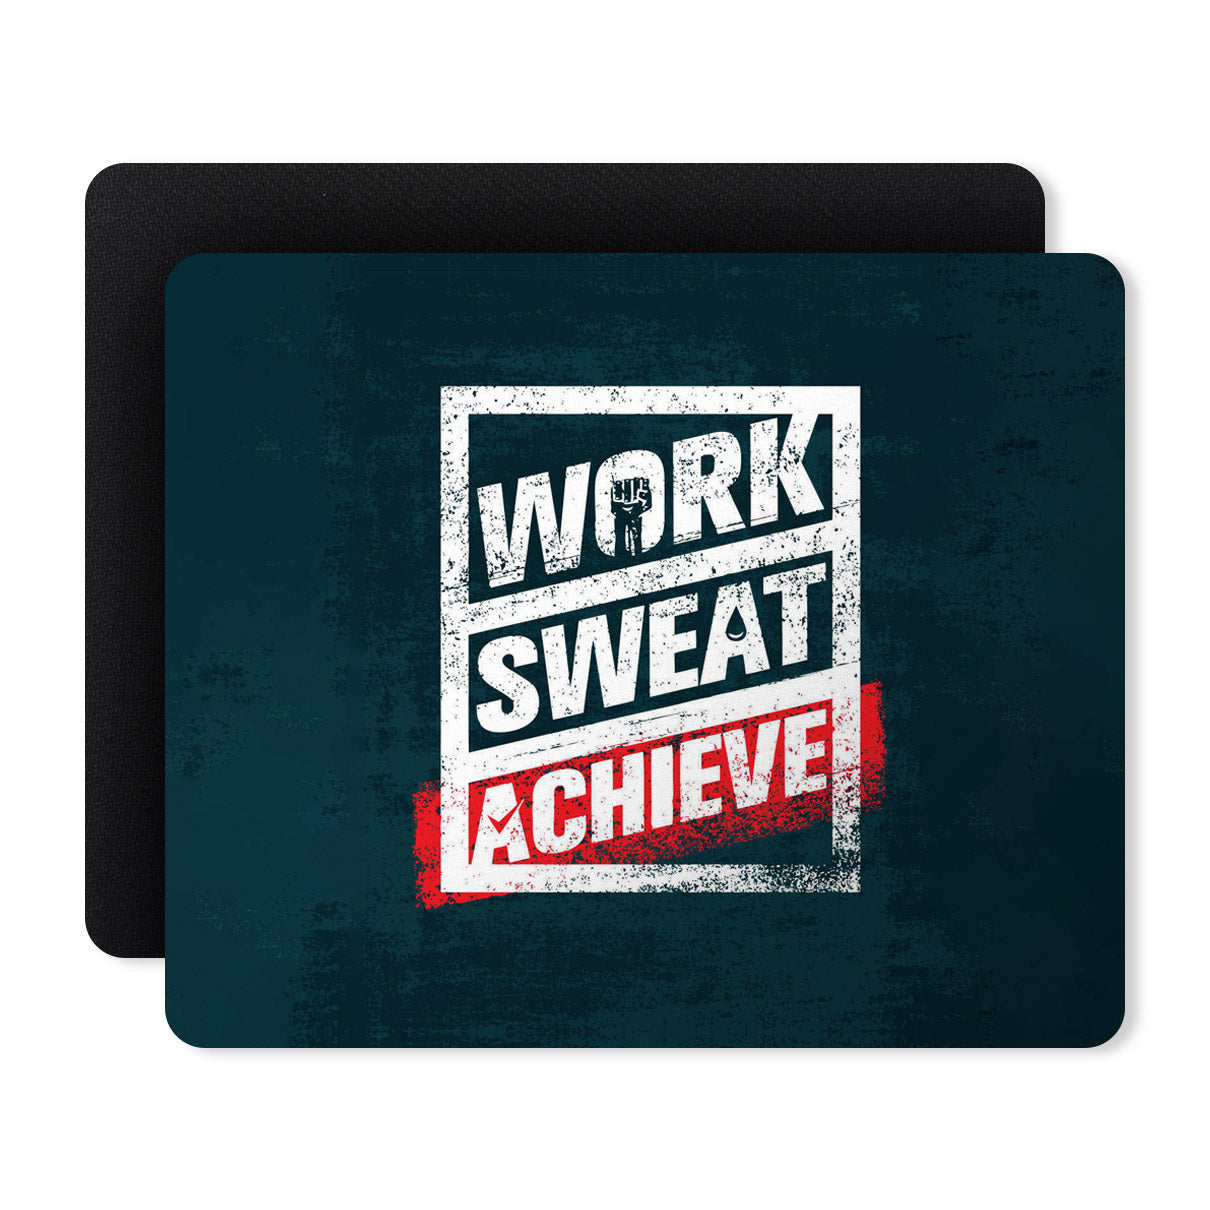 Work Sweat Achieve Quotes Designer Printed Premium Mouse pad (9 in x 7.5 in)